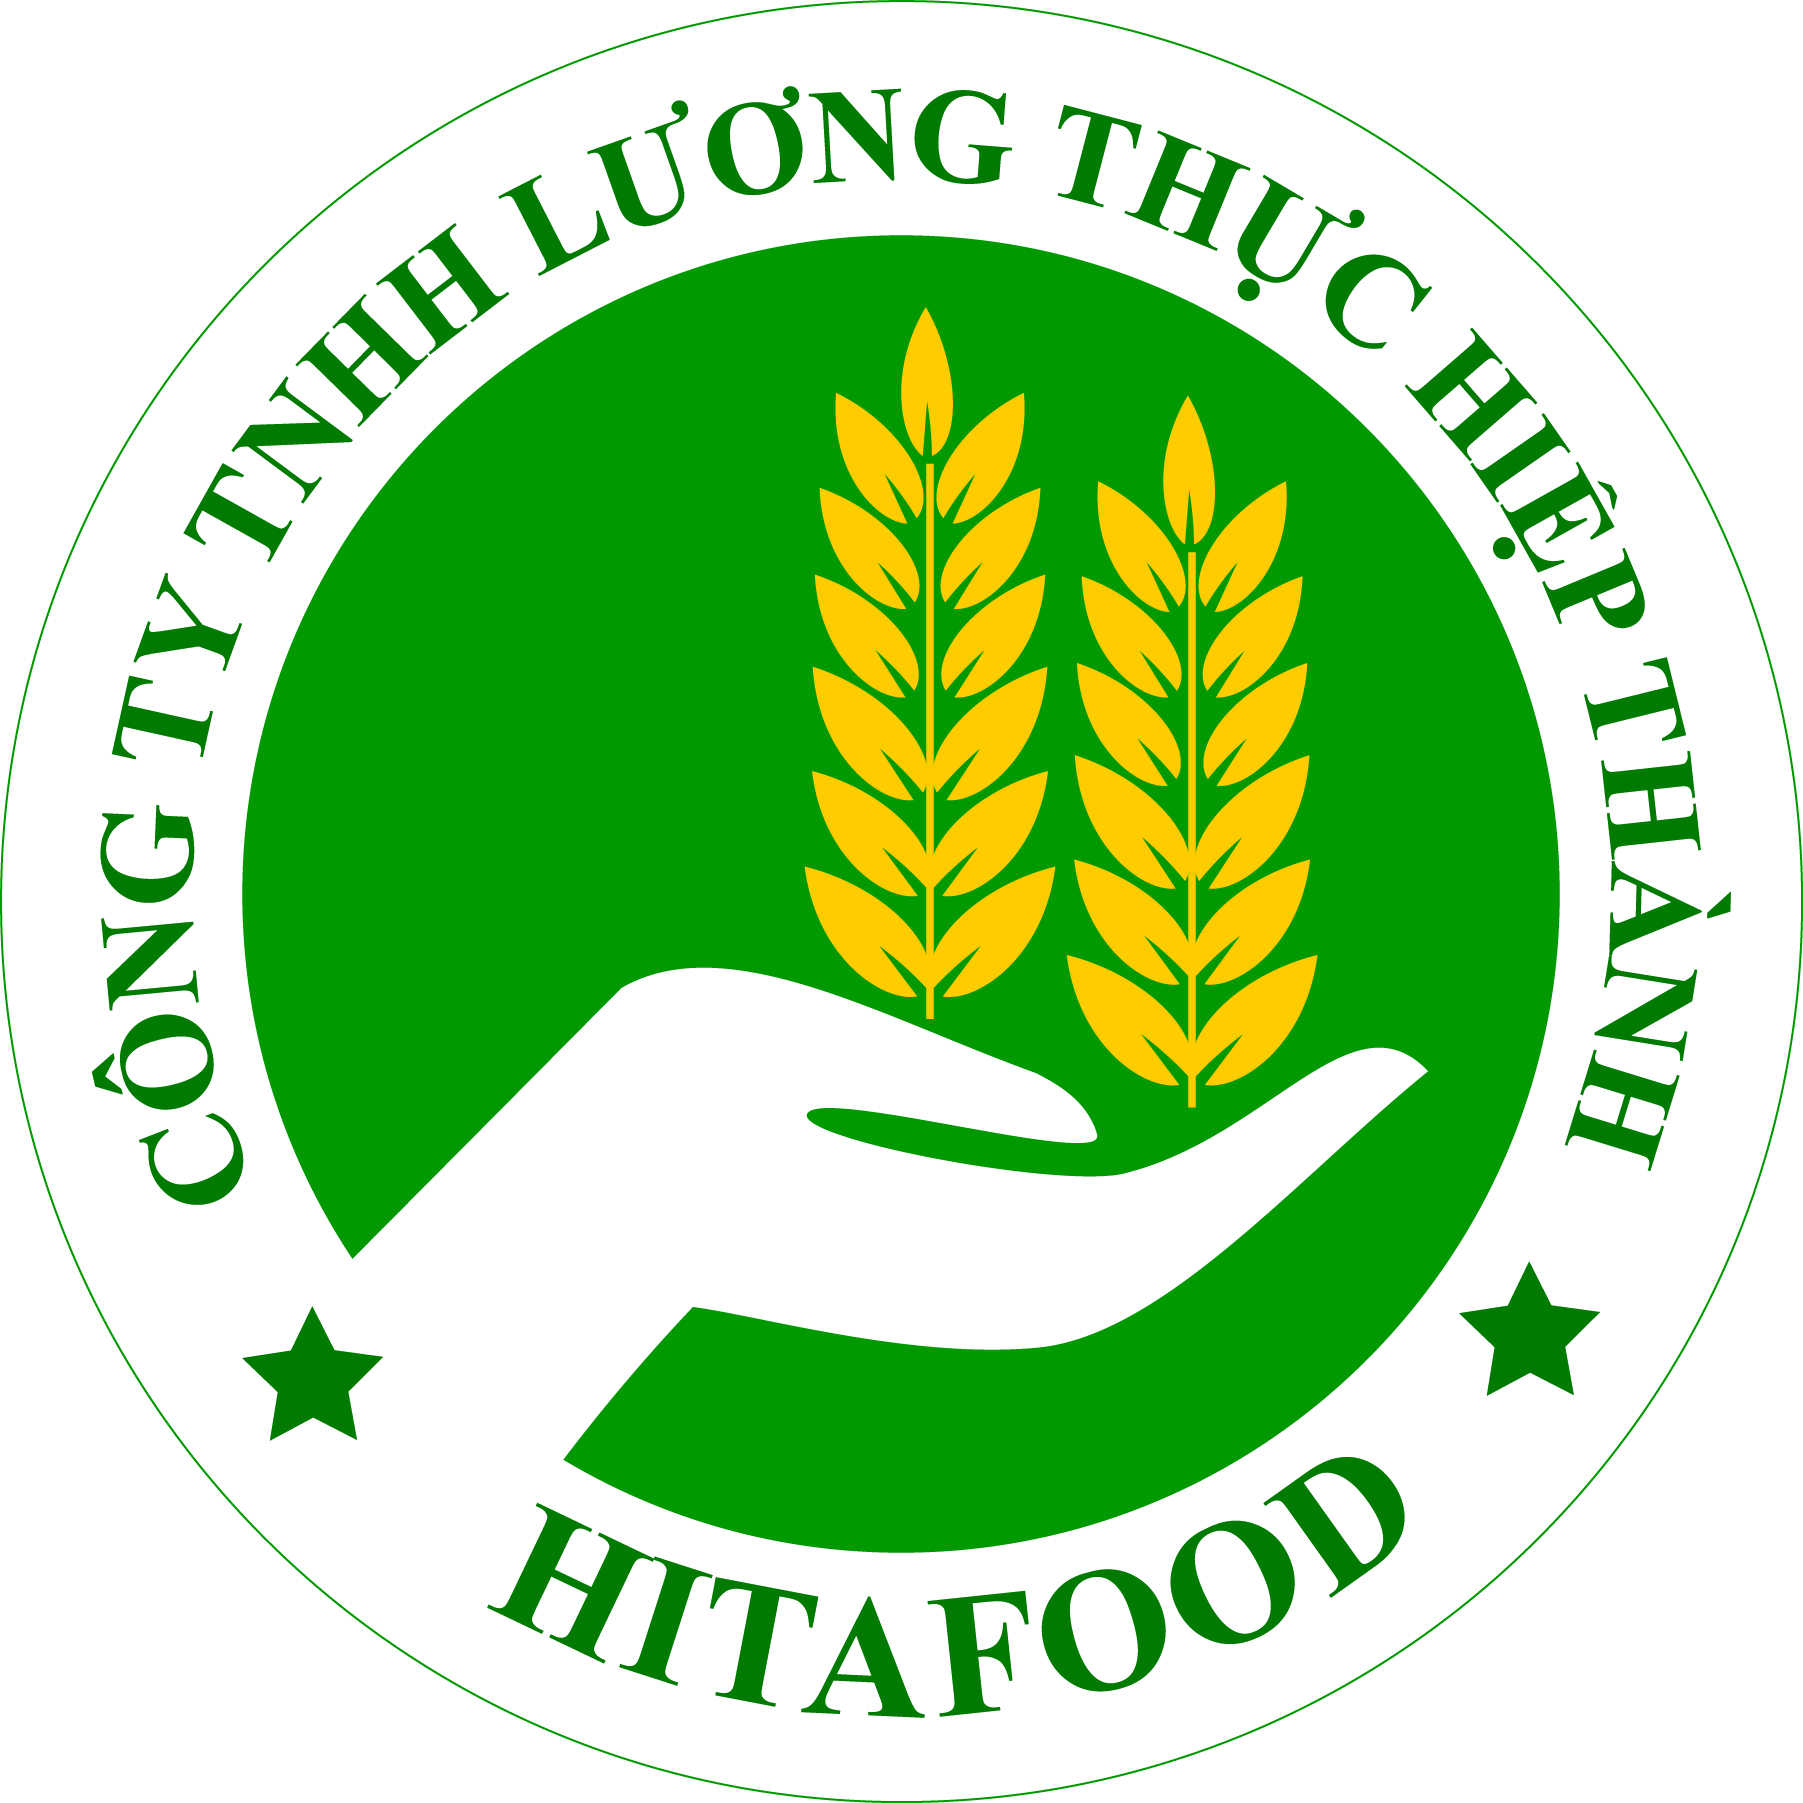 Logo công ty - Lương Thực Hiệp Thành - Công Ty TNHH Lương Thực Hiệp Thành